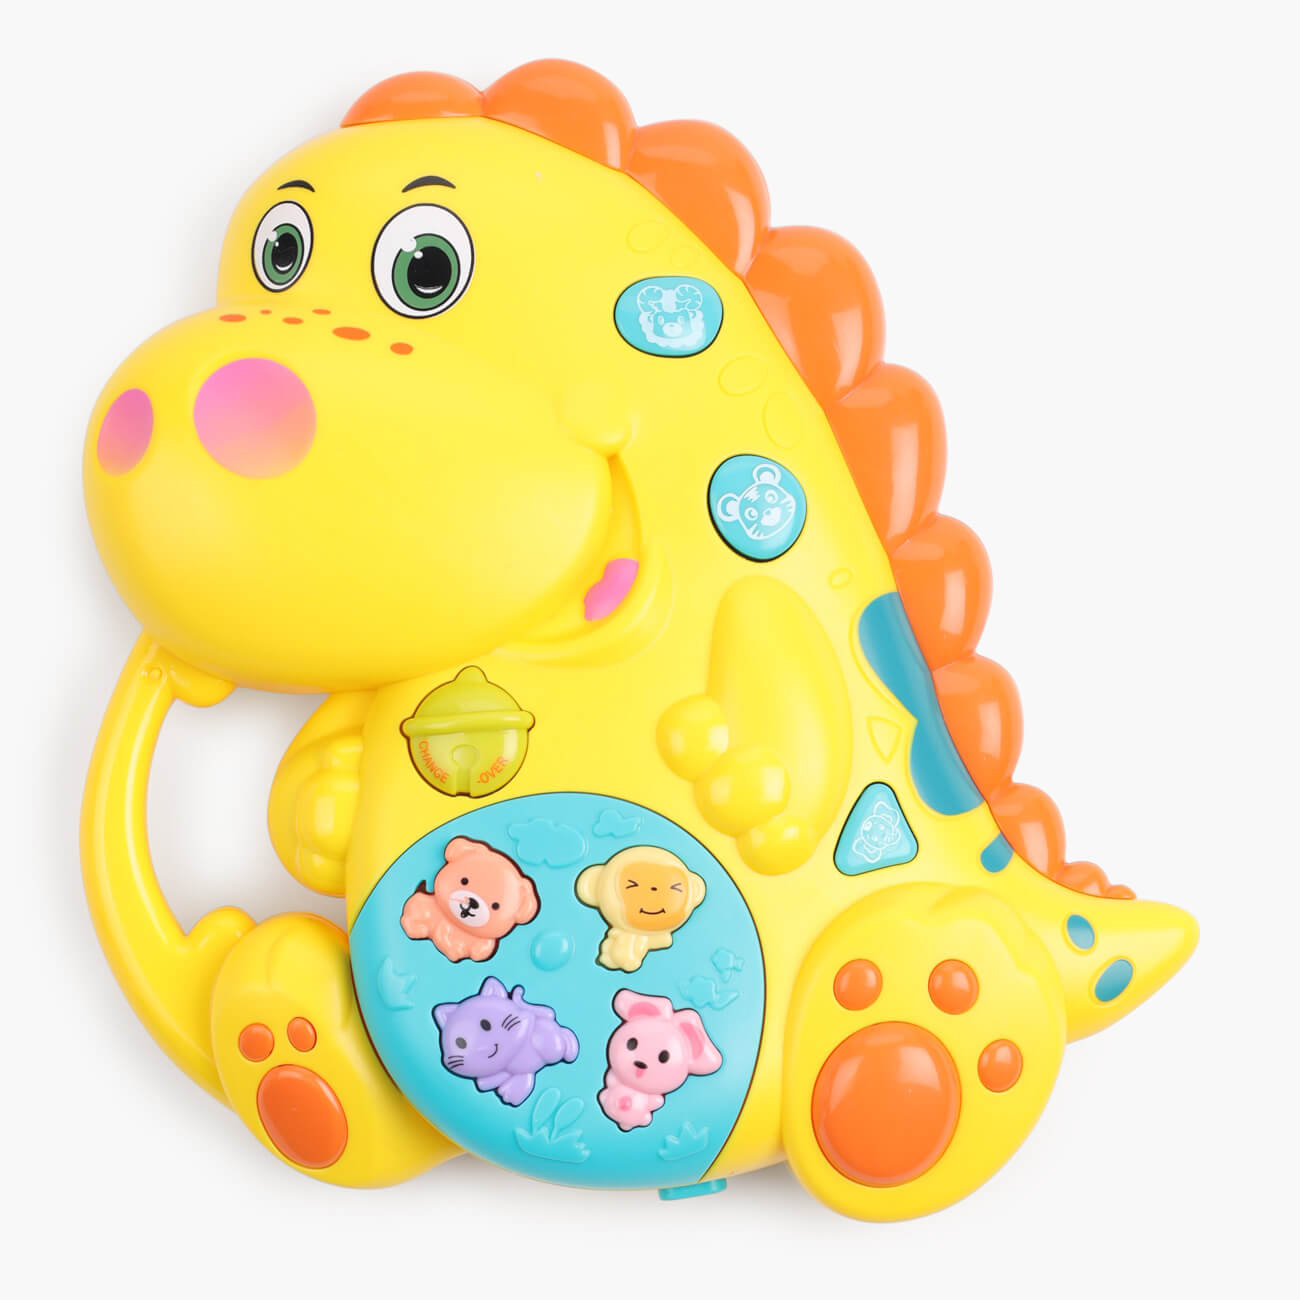 Игрушка развивающая, 15х16 см, музыкальная, пластик, зеленая, Динозавр, Dino музыкальная игрушка весёлая лягушка звук свет